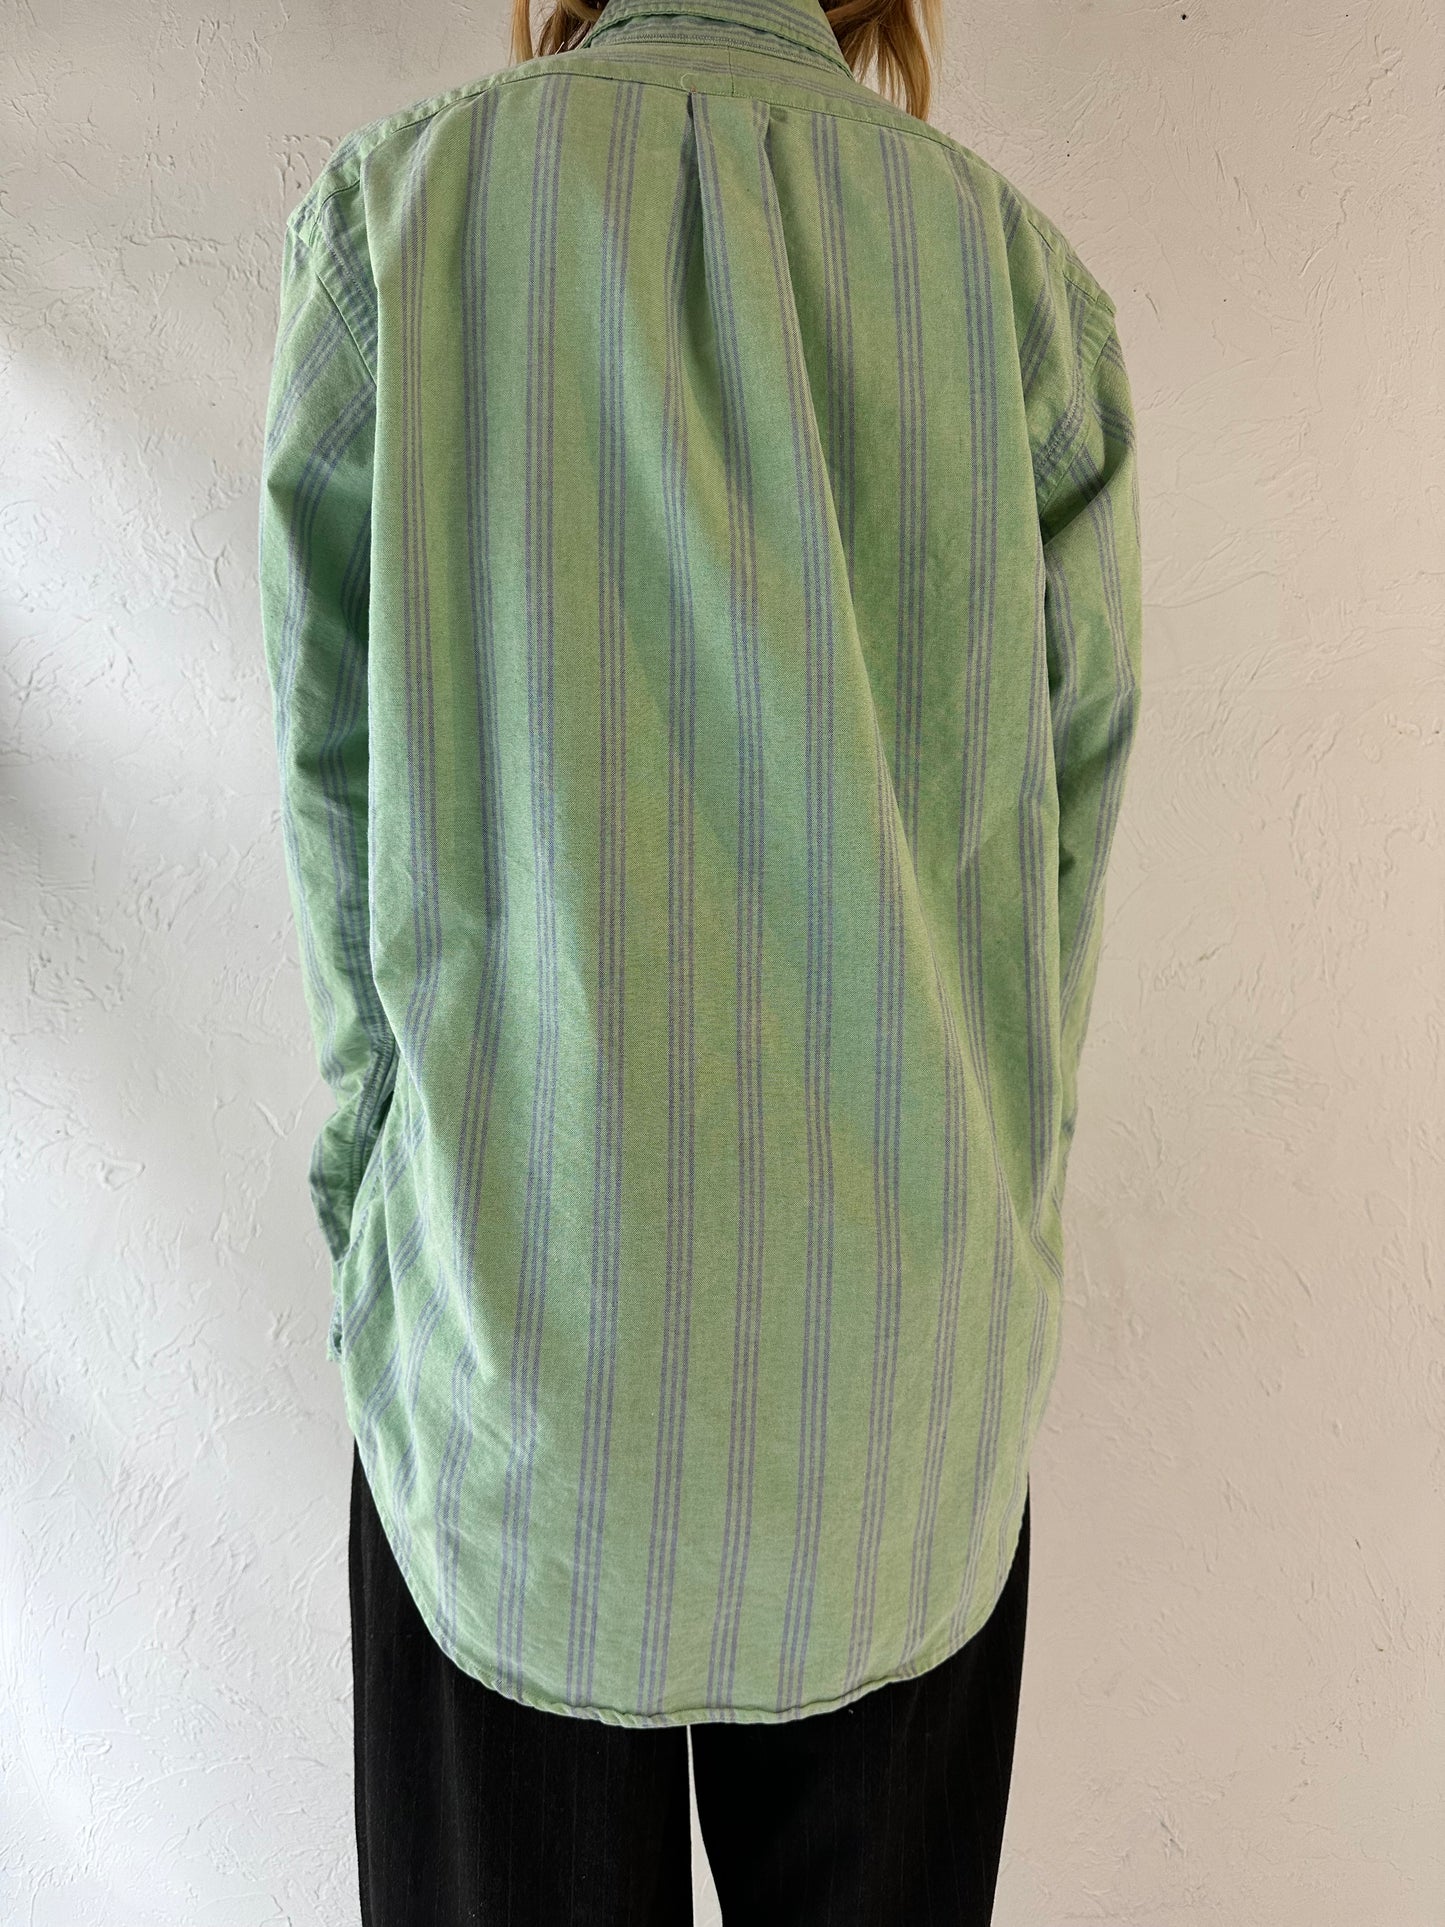 90s 'Ralph Lauren' Green Button Up Shirt / Large